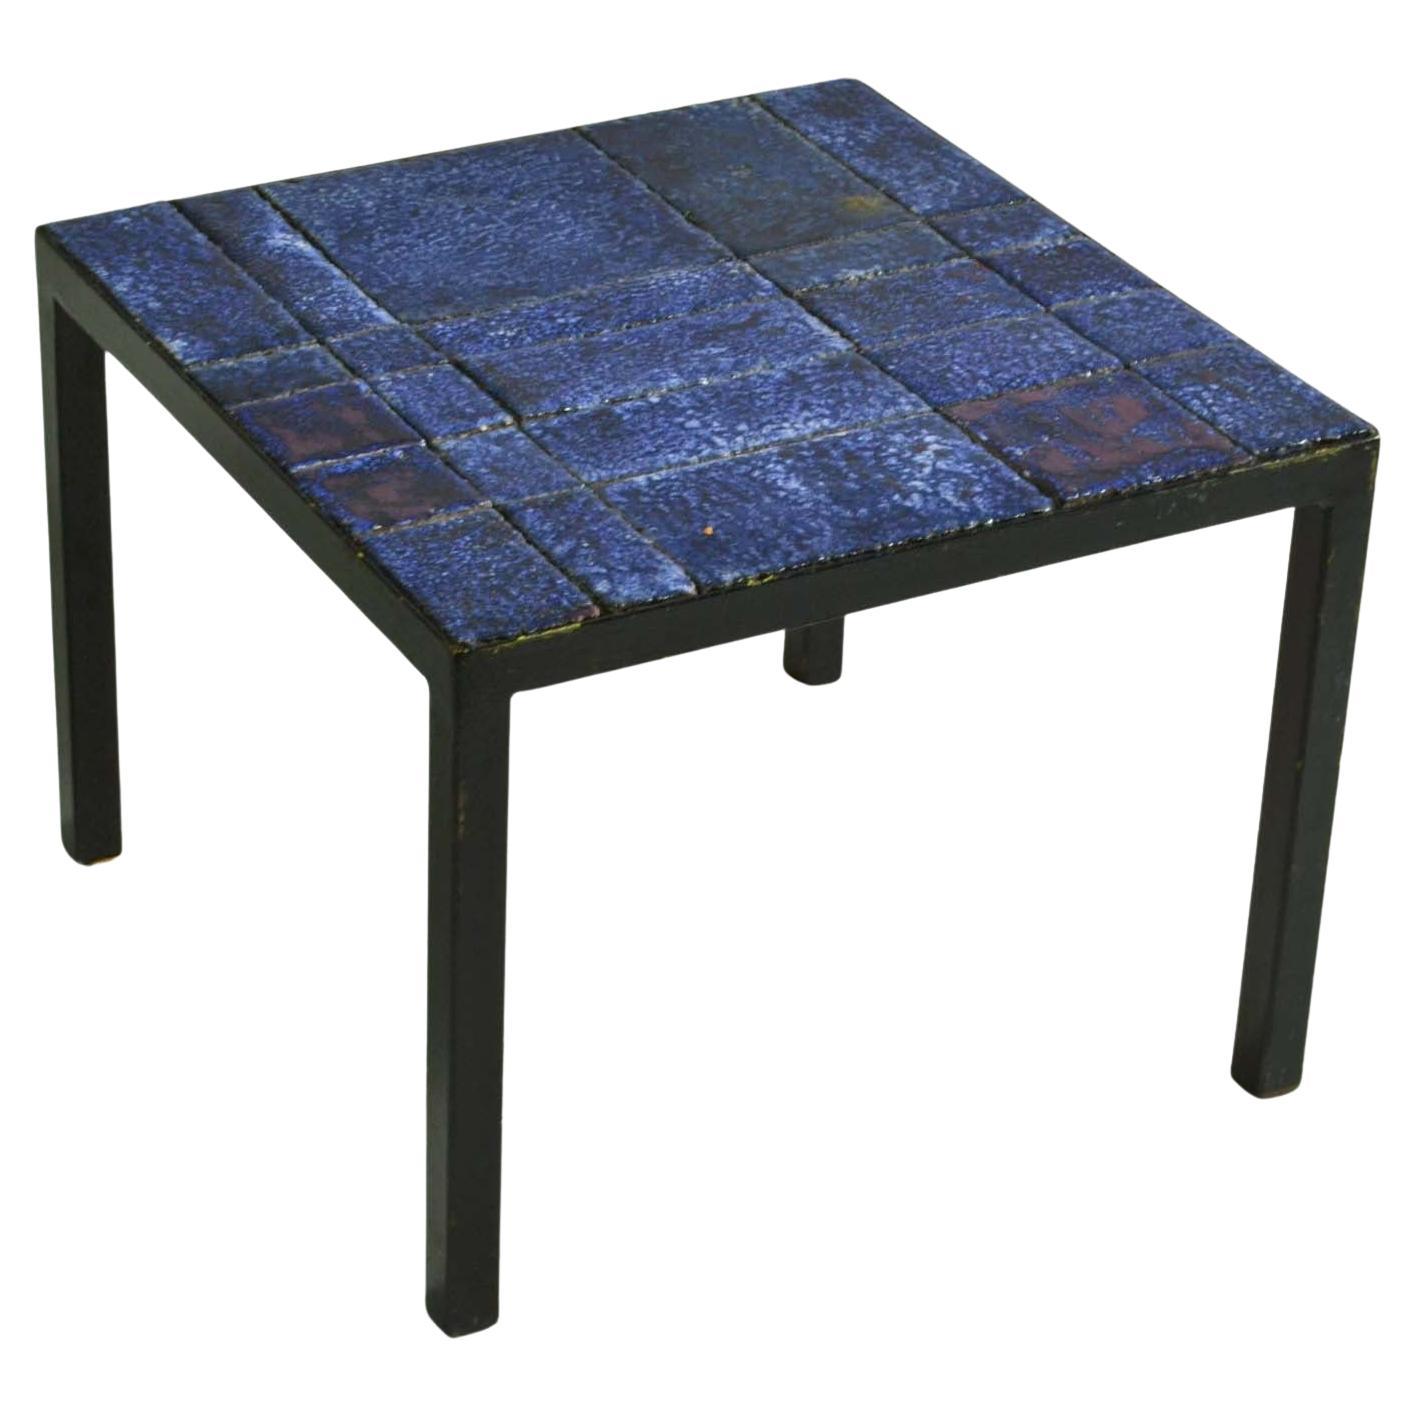 Table d'appoint italienne carrée en céramique bleue sur cadre métallique noir